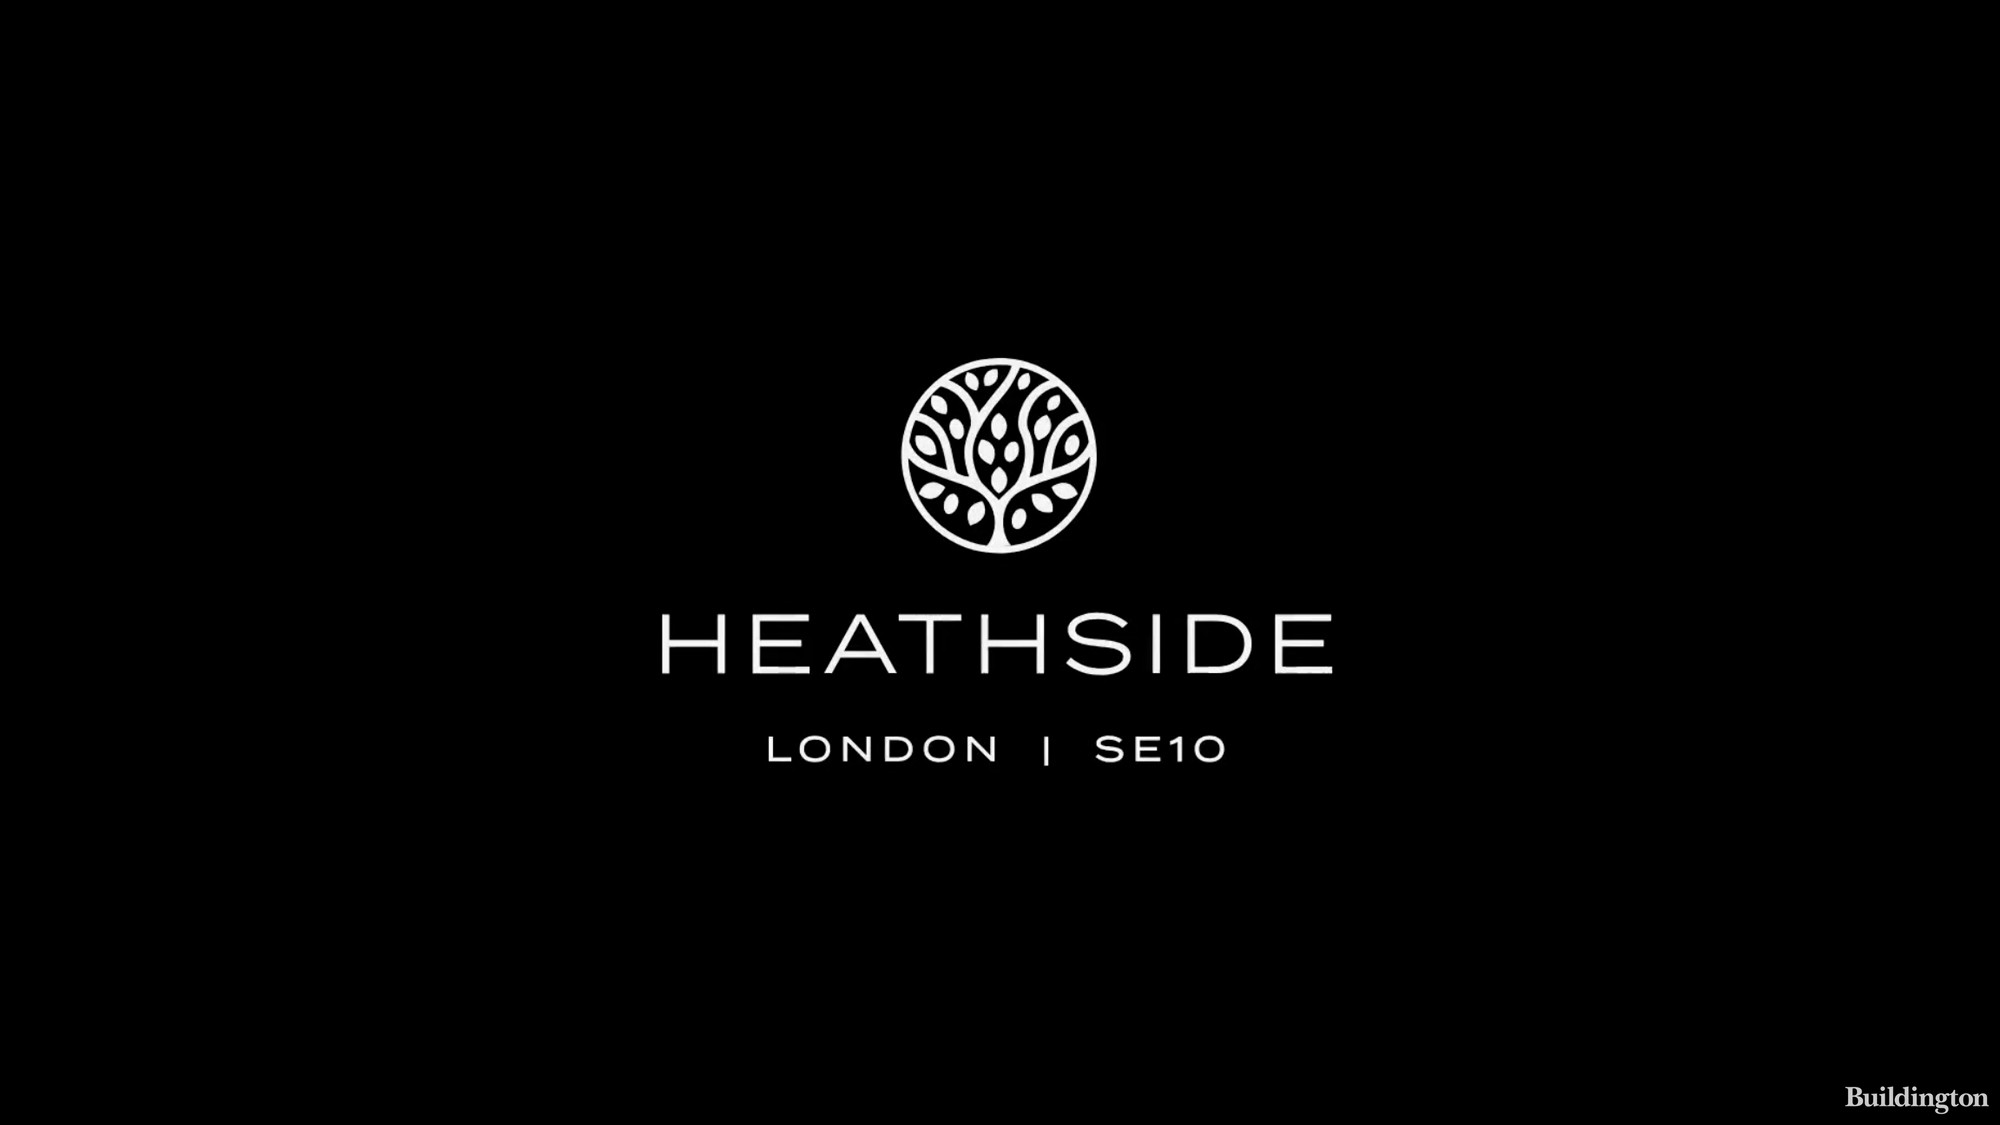 Heathside development by Investin in Greenwich, London SE10